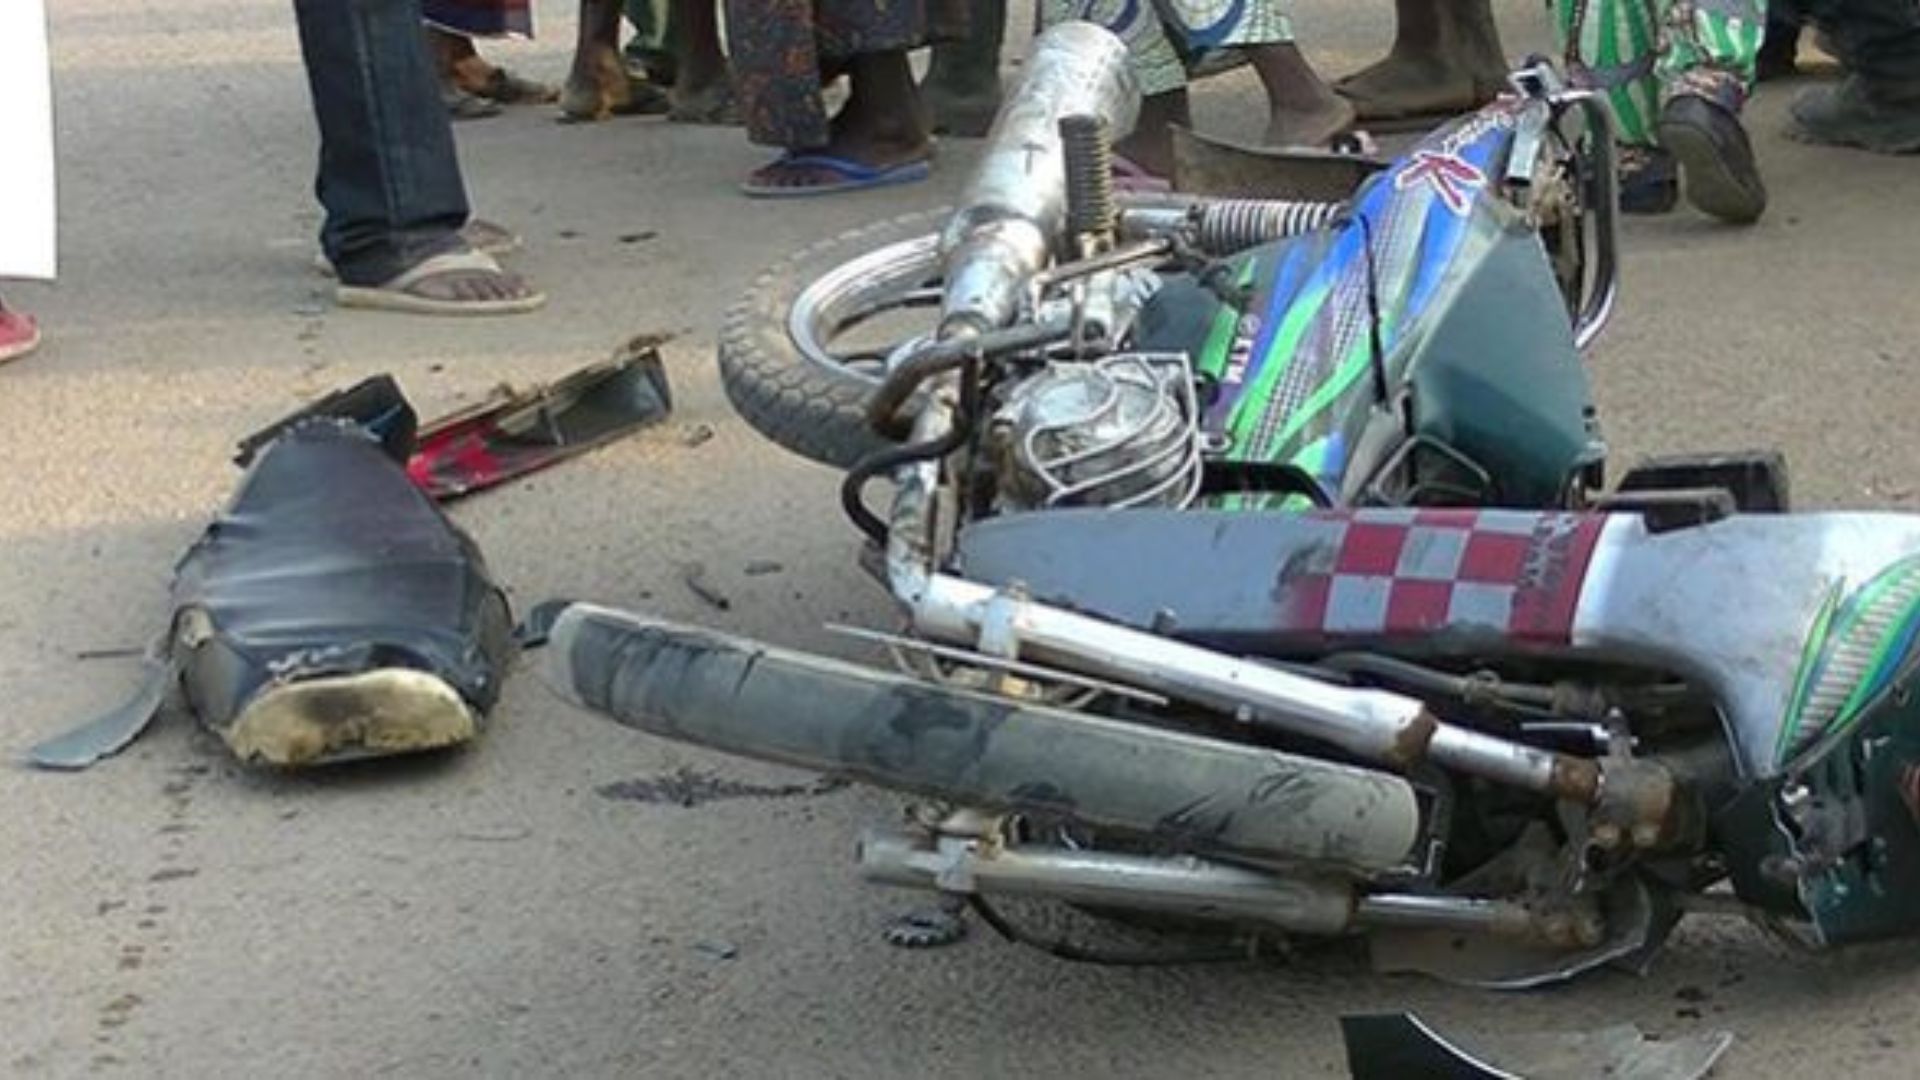 Tragédie à Bakel : Un conducteur de moto taxi "Jakarta" tué dans un accident de la route